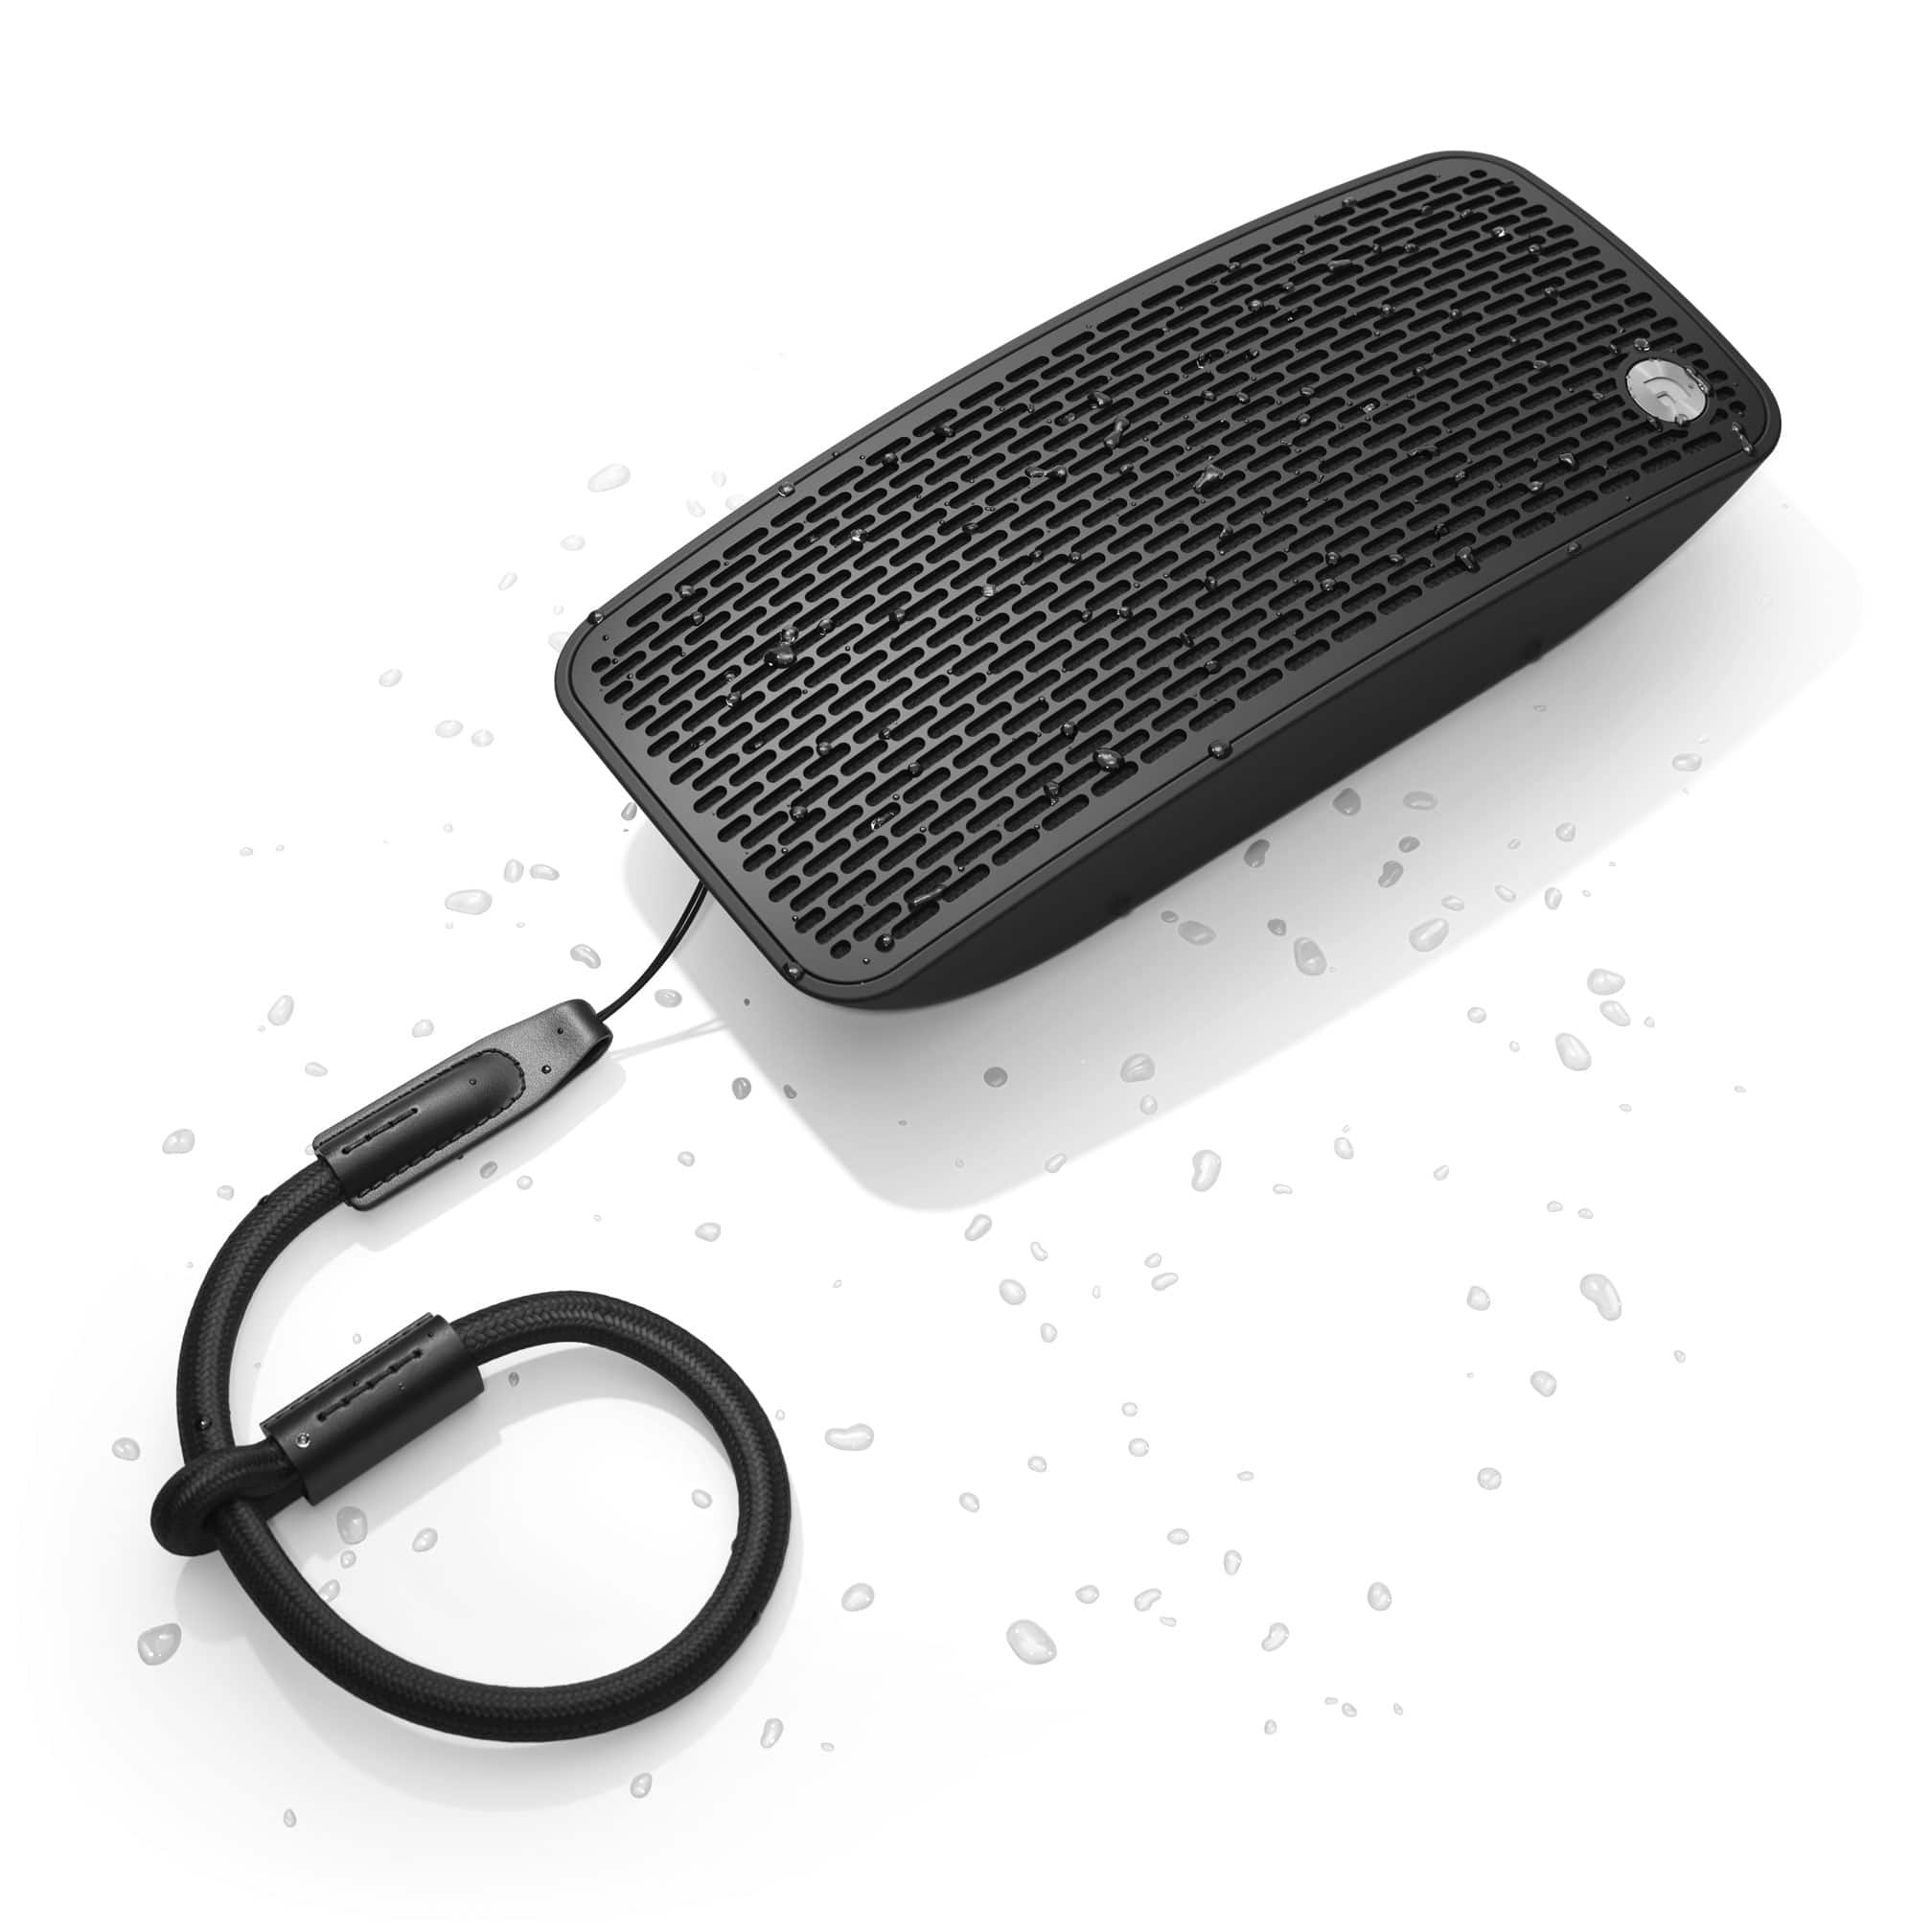 Audio Pro - P5 - Portable Bluetooth Speaker Australia